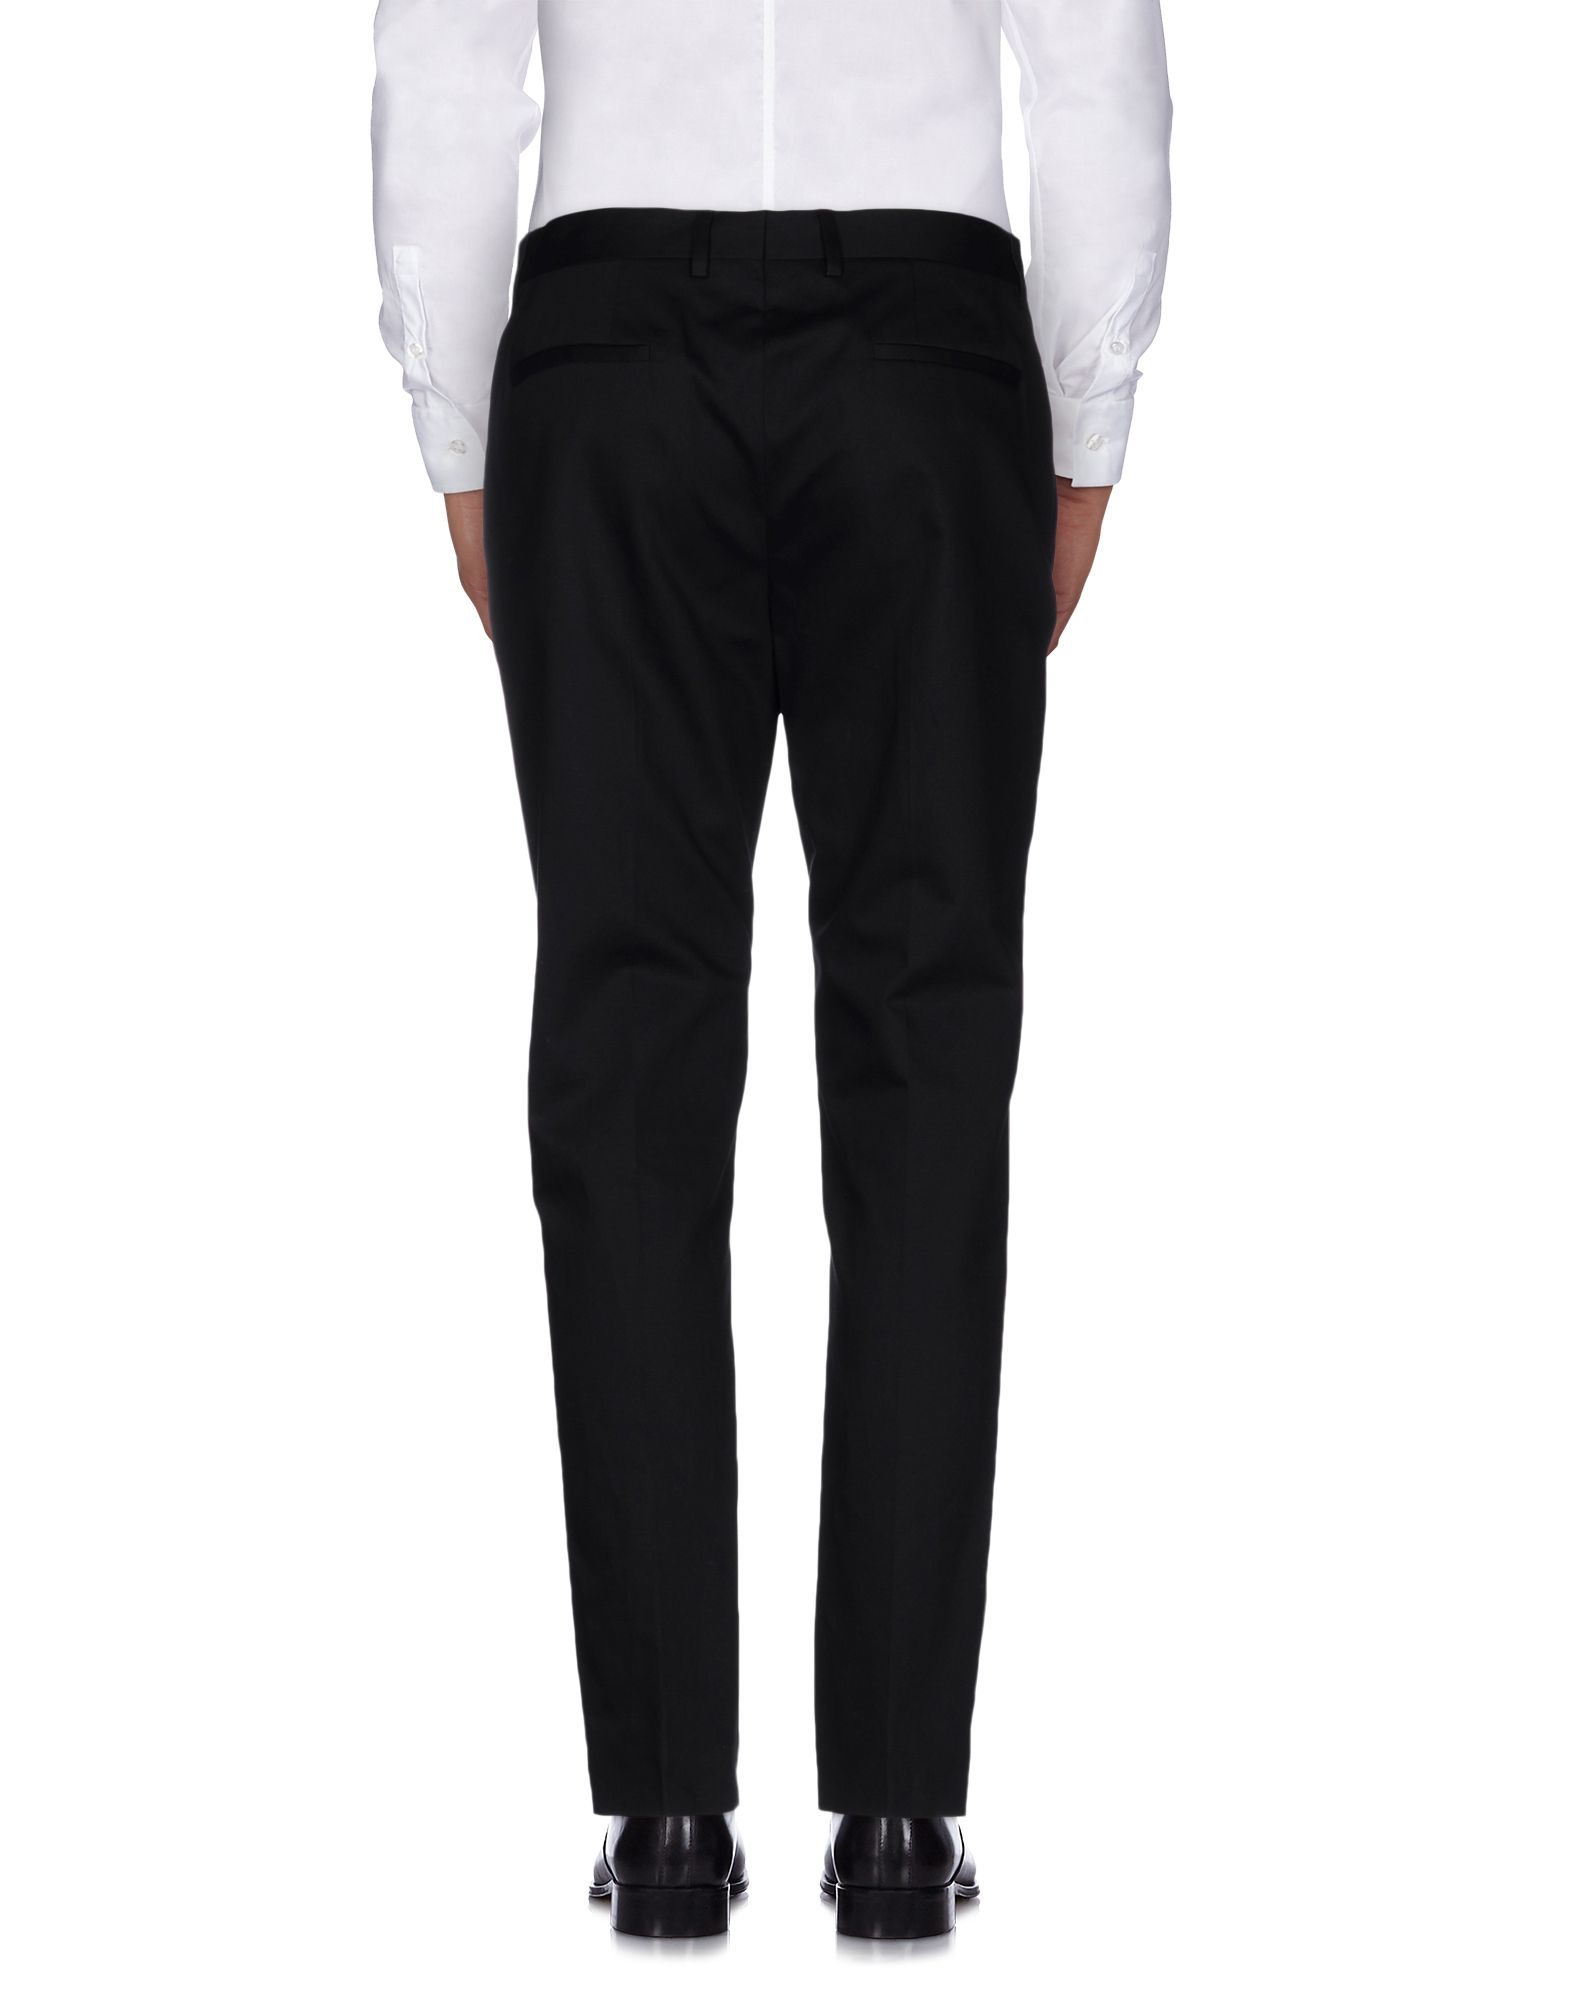 Maison Margiela Wool Casual Pants in Black for Men - Lyst